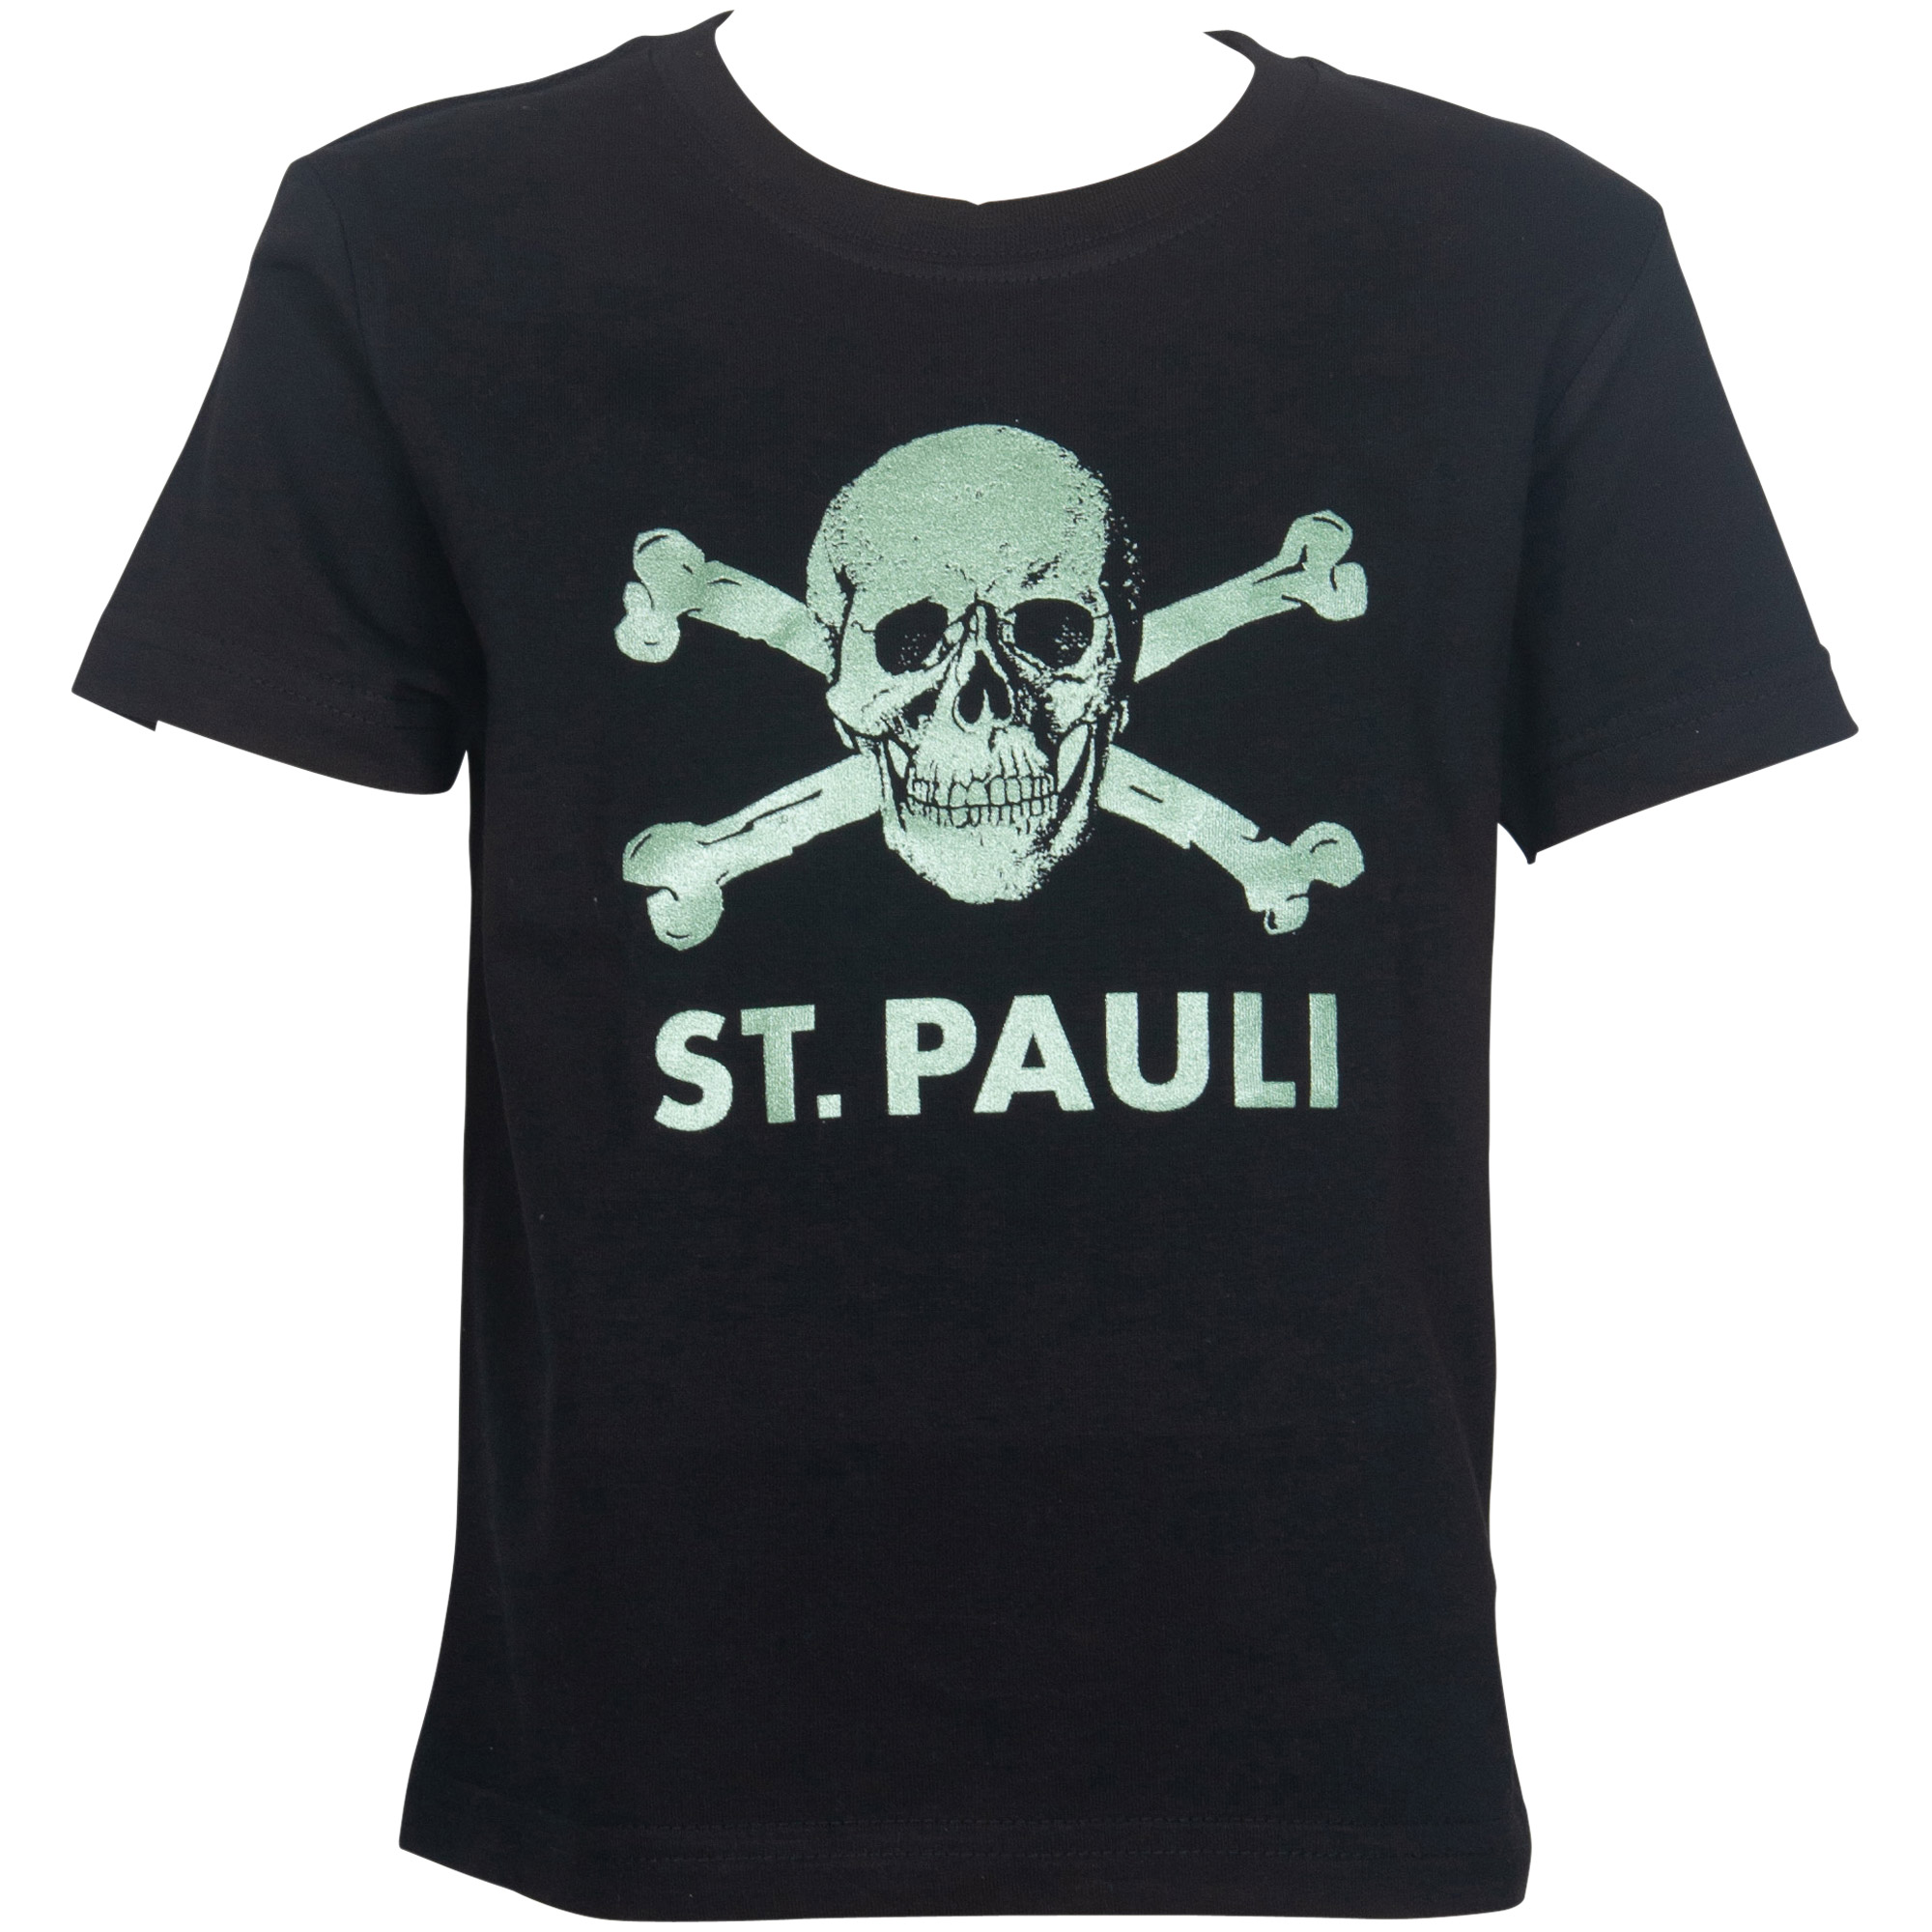 FC St. Pauli - Kinder T-Shirt Glitzer Totenkopf Grün - schwarz